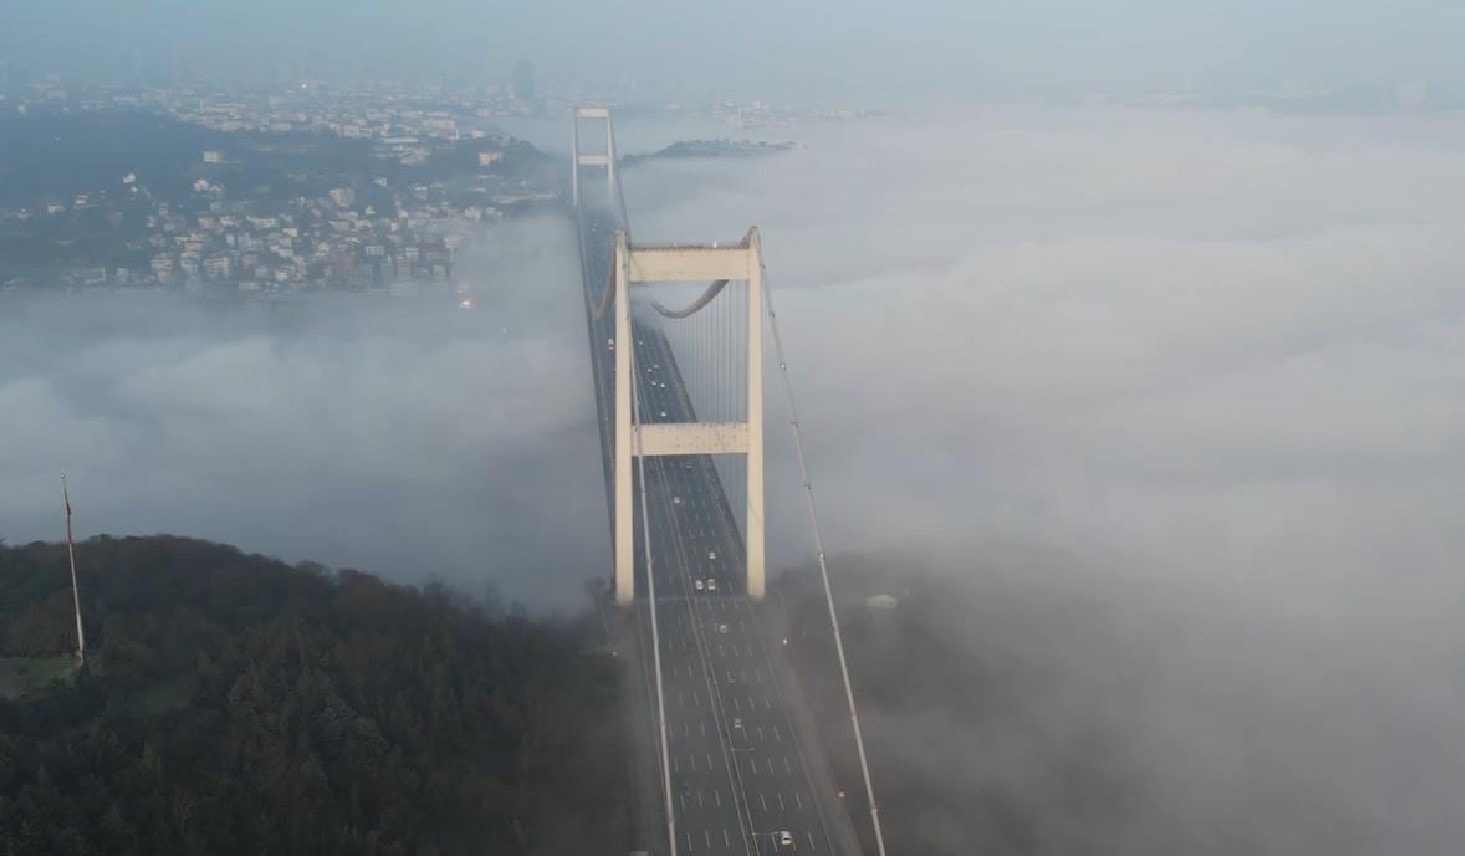 İstanbul Boğazı'nda gemi trafiğine sis engeli